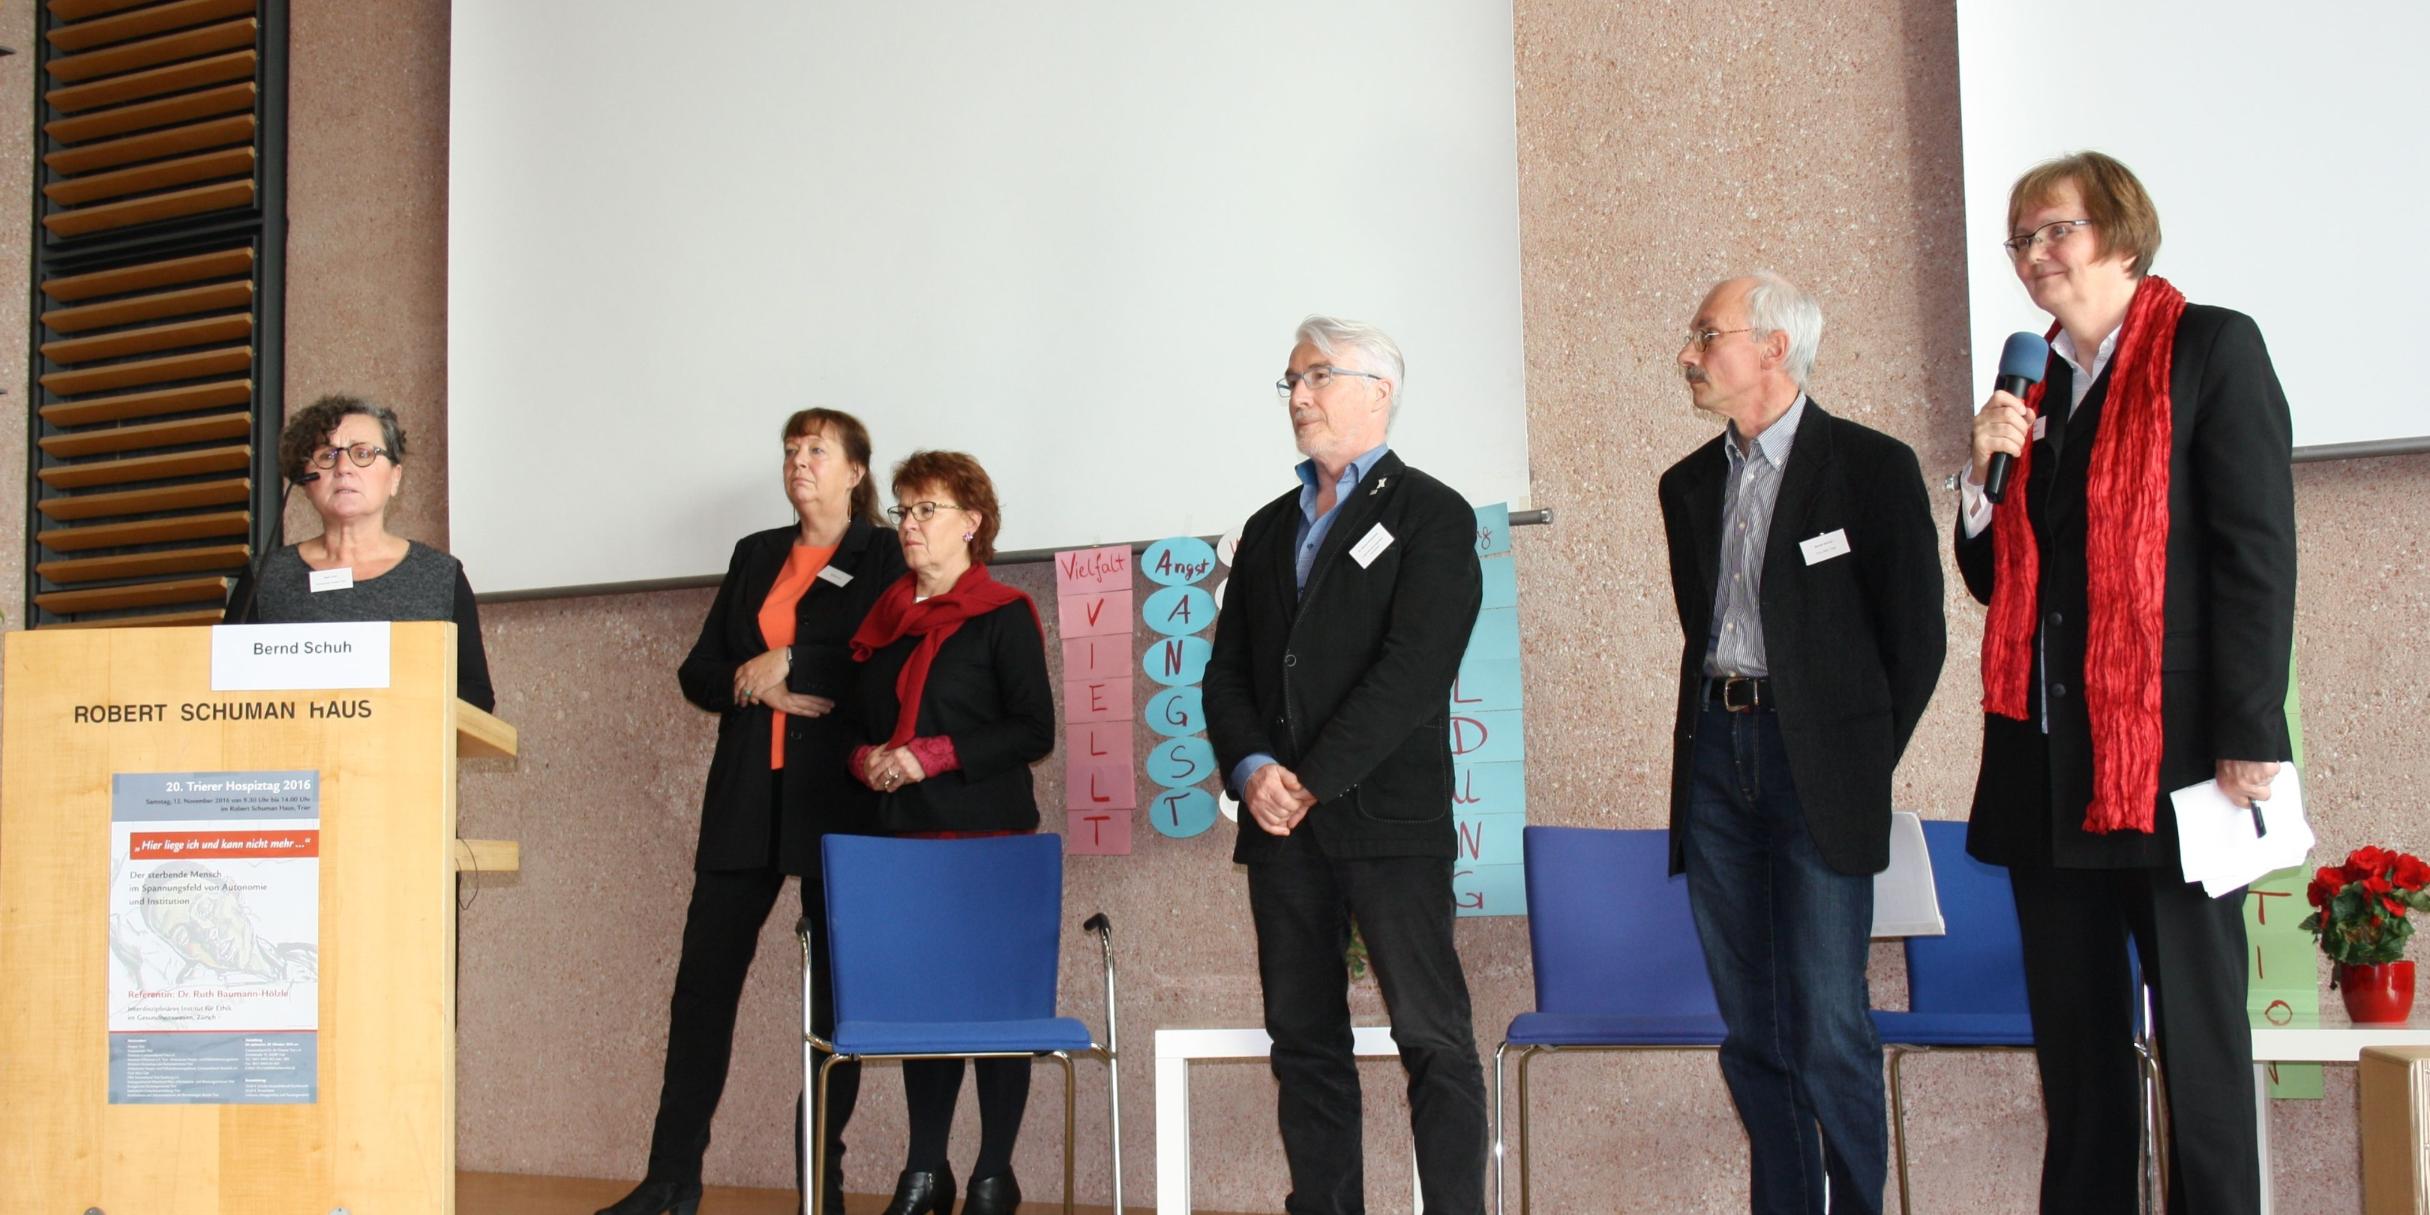 Bühne frei für die Gründer der Hospizbewegung in der Region Trier: Ruth Krell (links), Monika Lutz, Renate Langenbach, Bernd Steinmetz, Bernd Schuh und Moderatorin Hildegard Eynöthen (rechts).